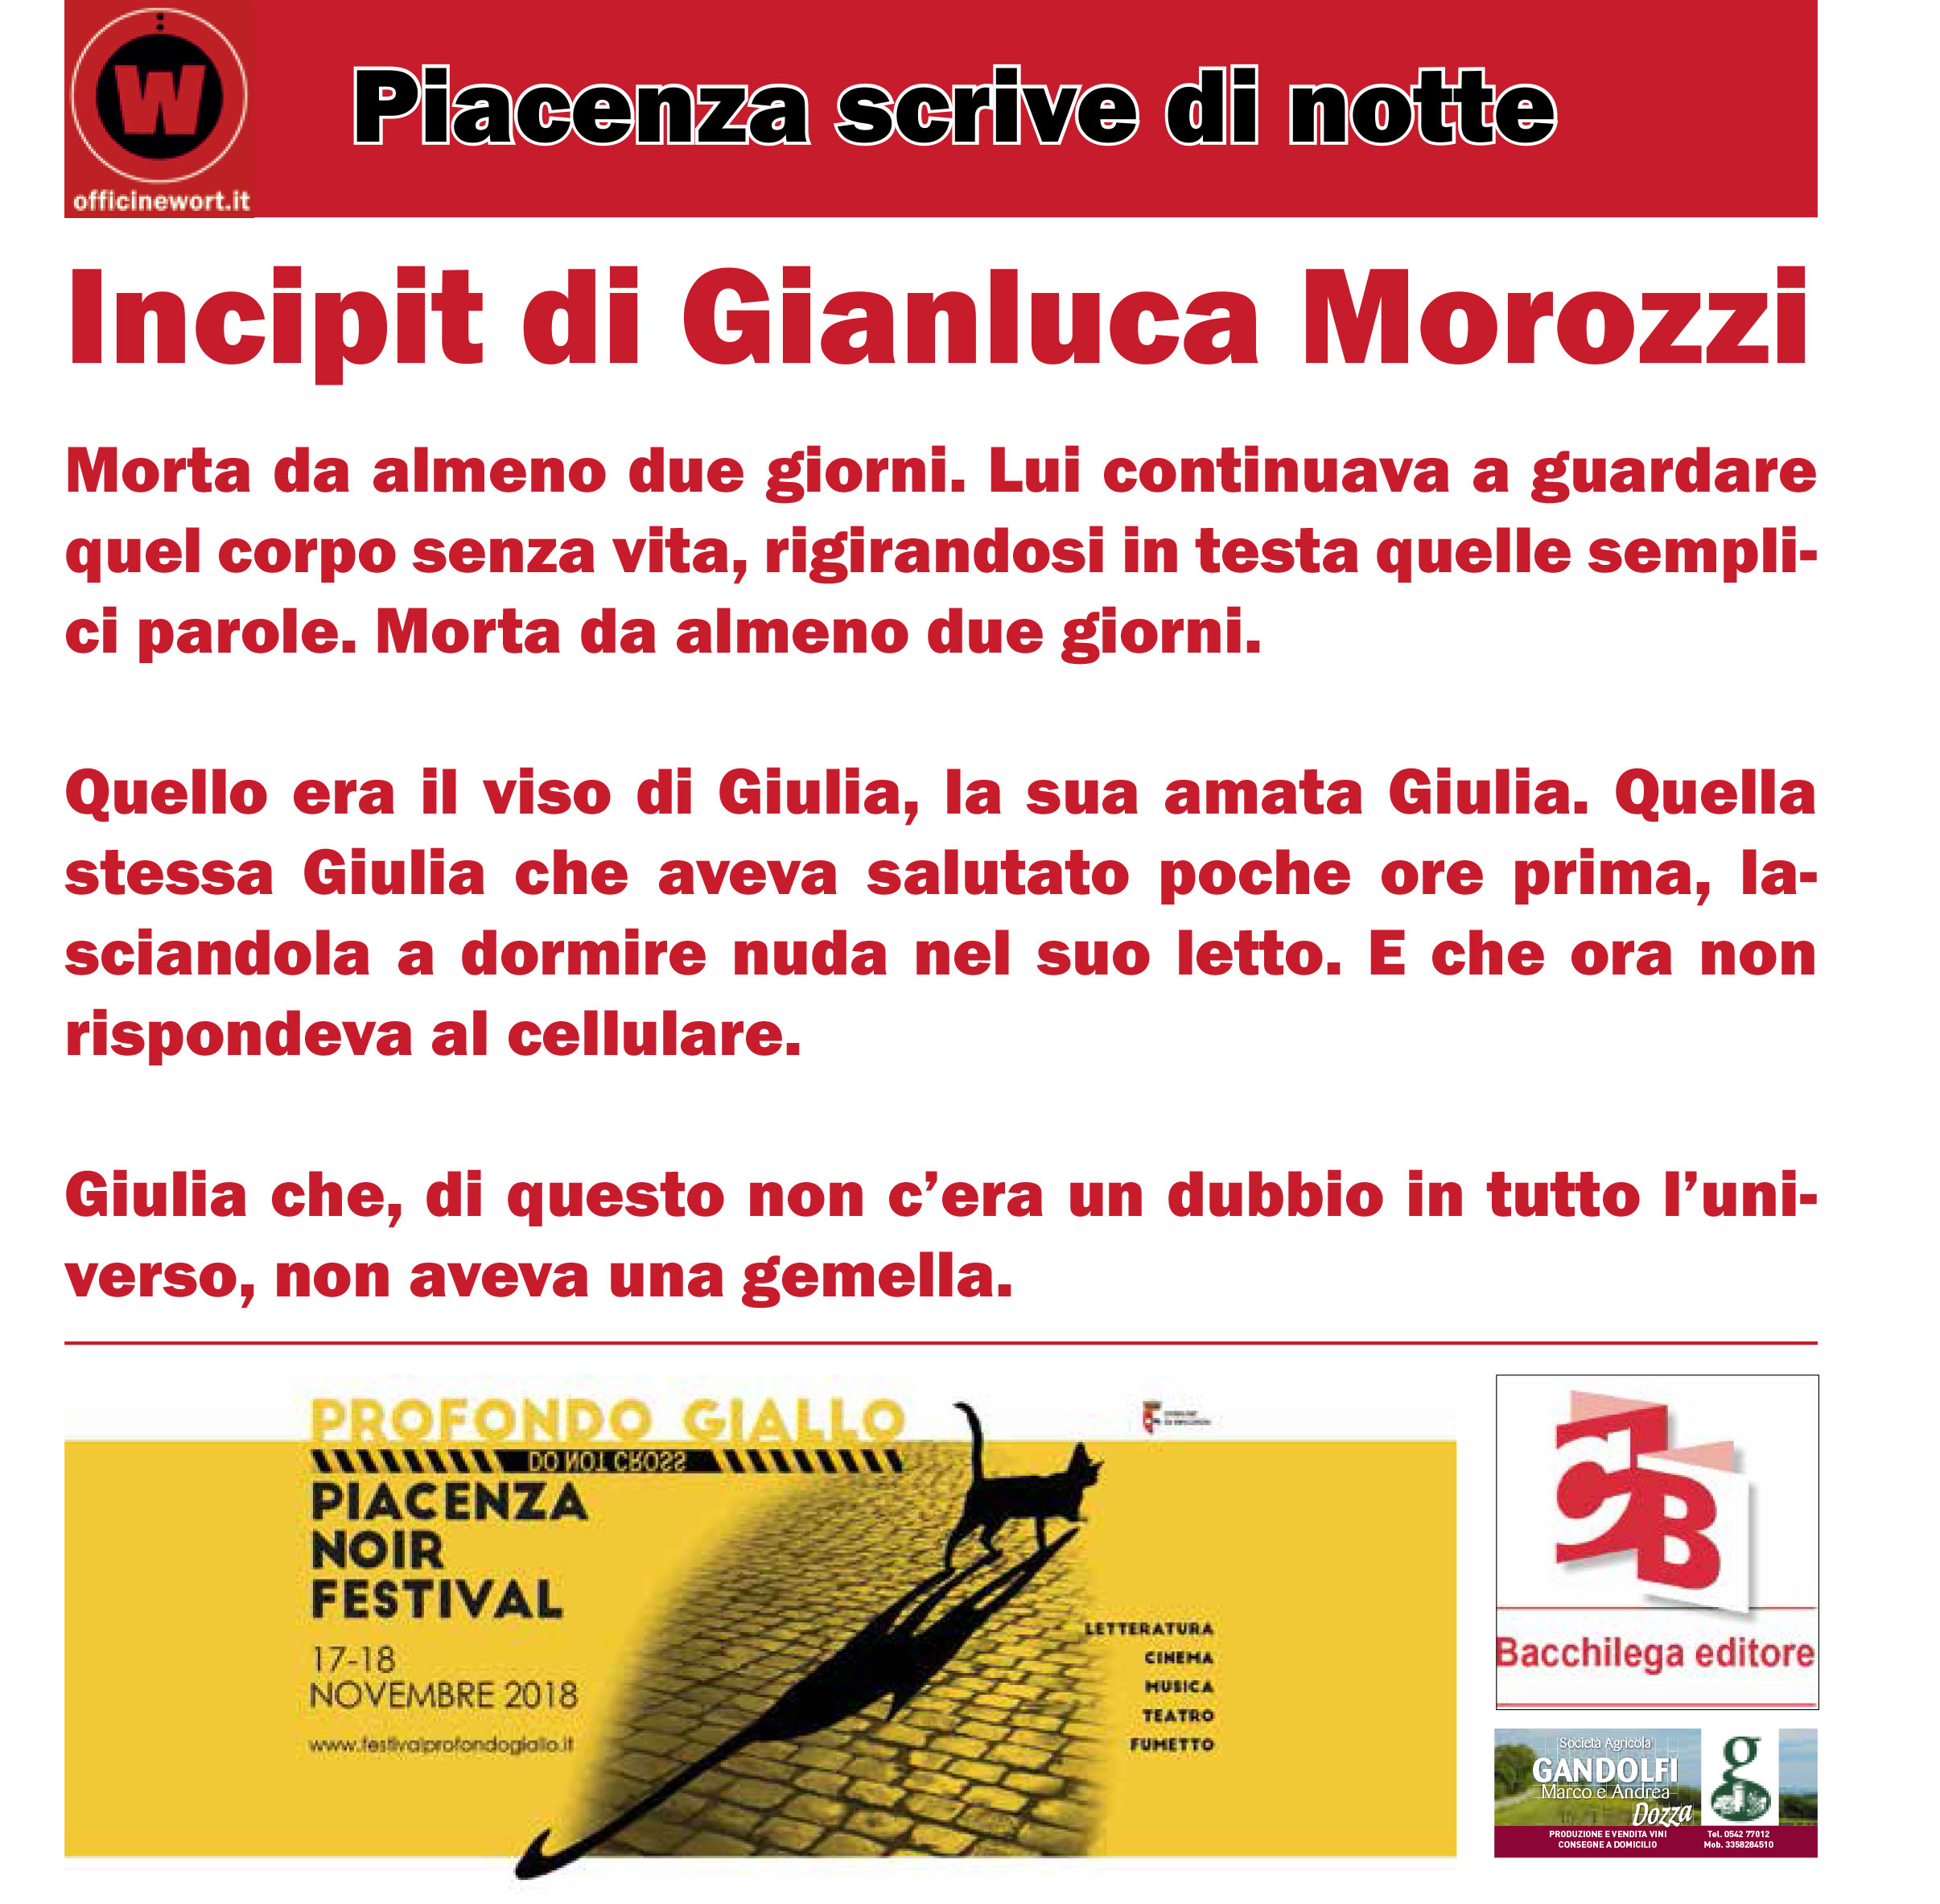 2018_Tdn_Piacenza_incipit_web